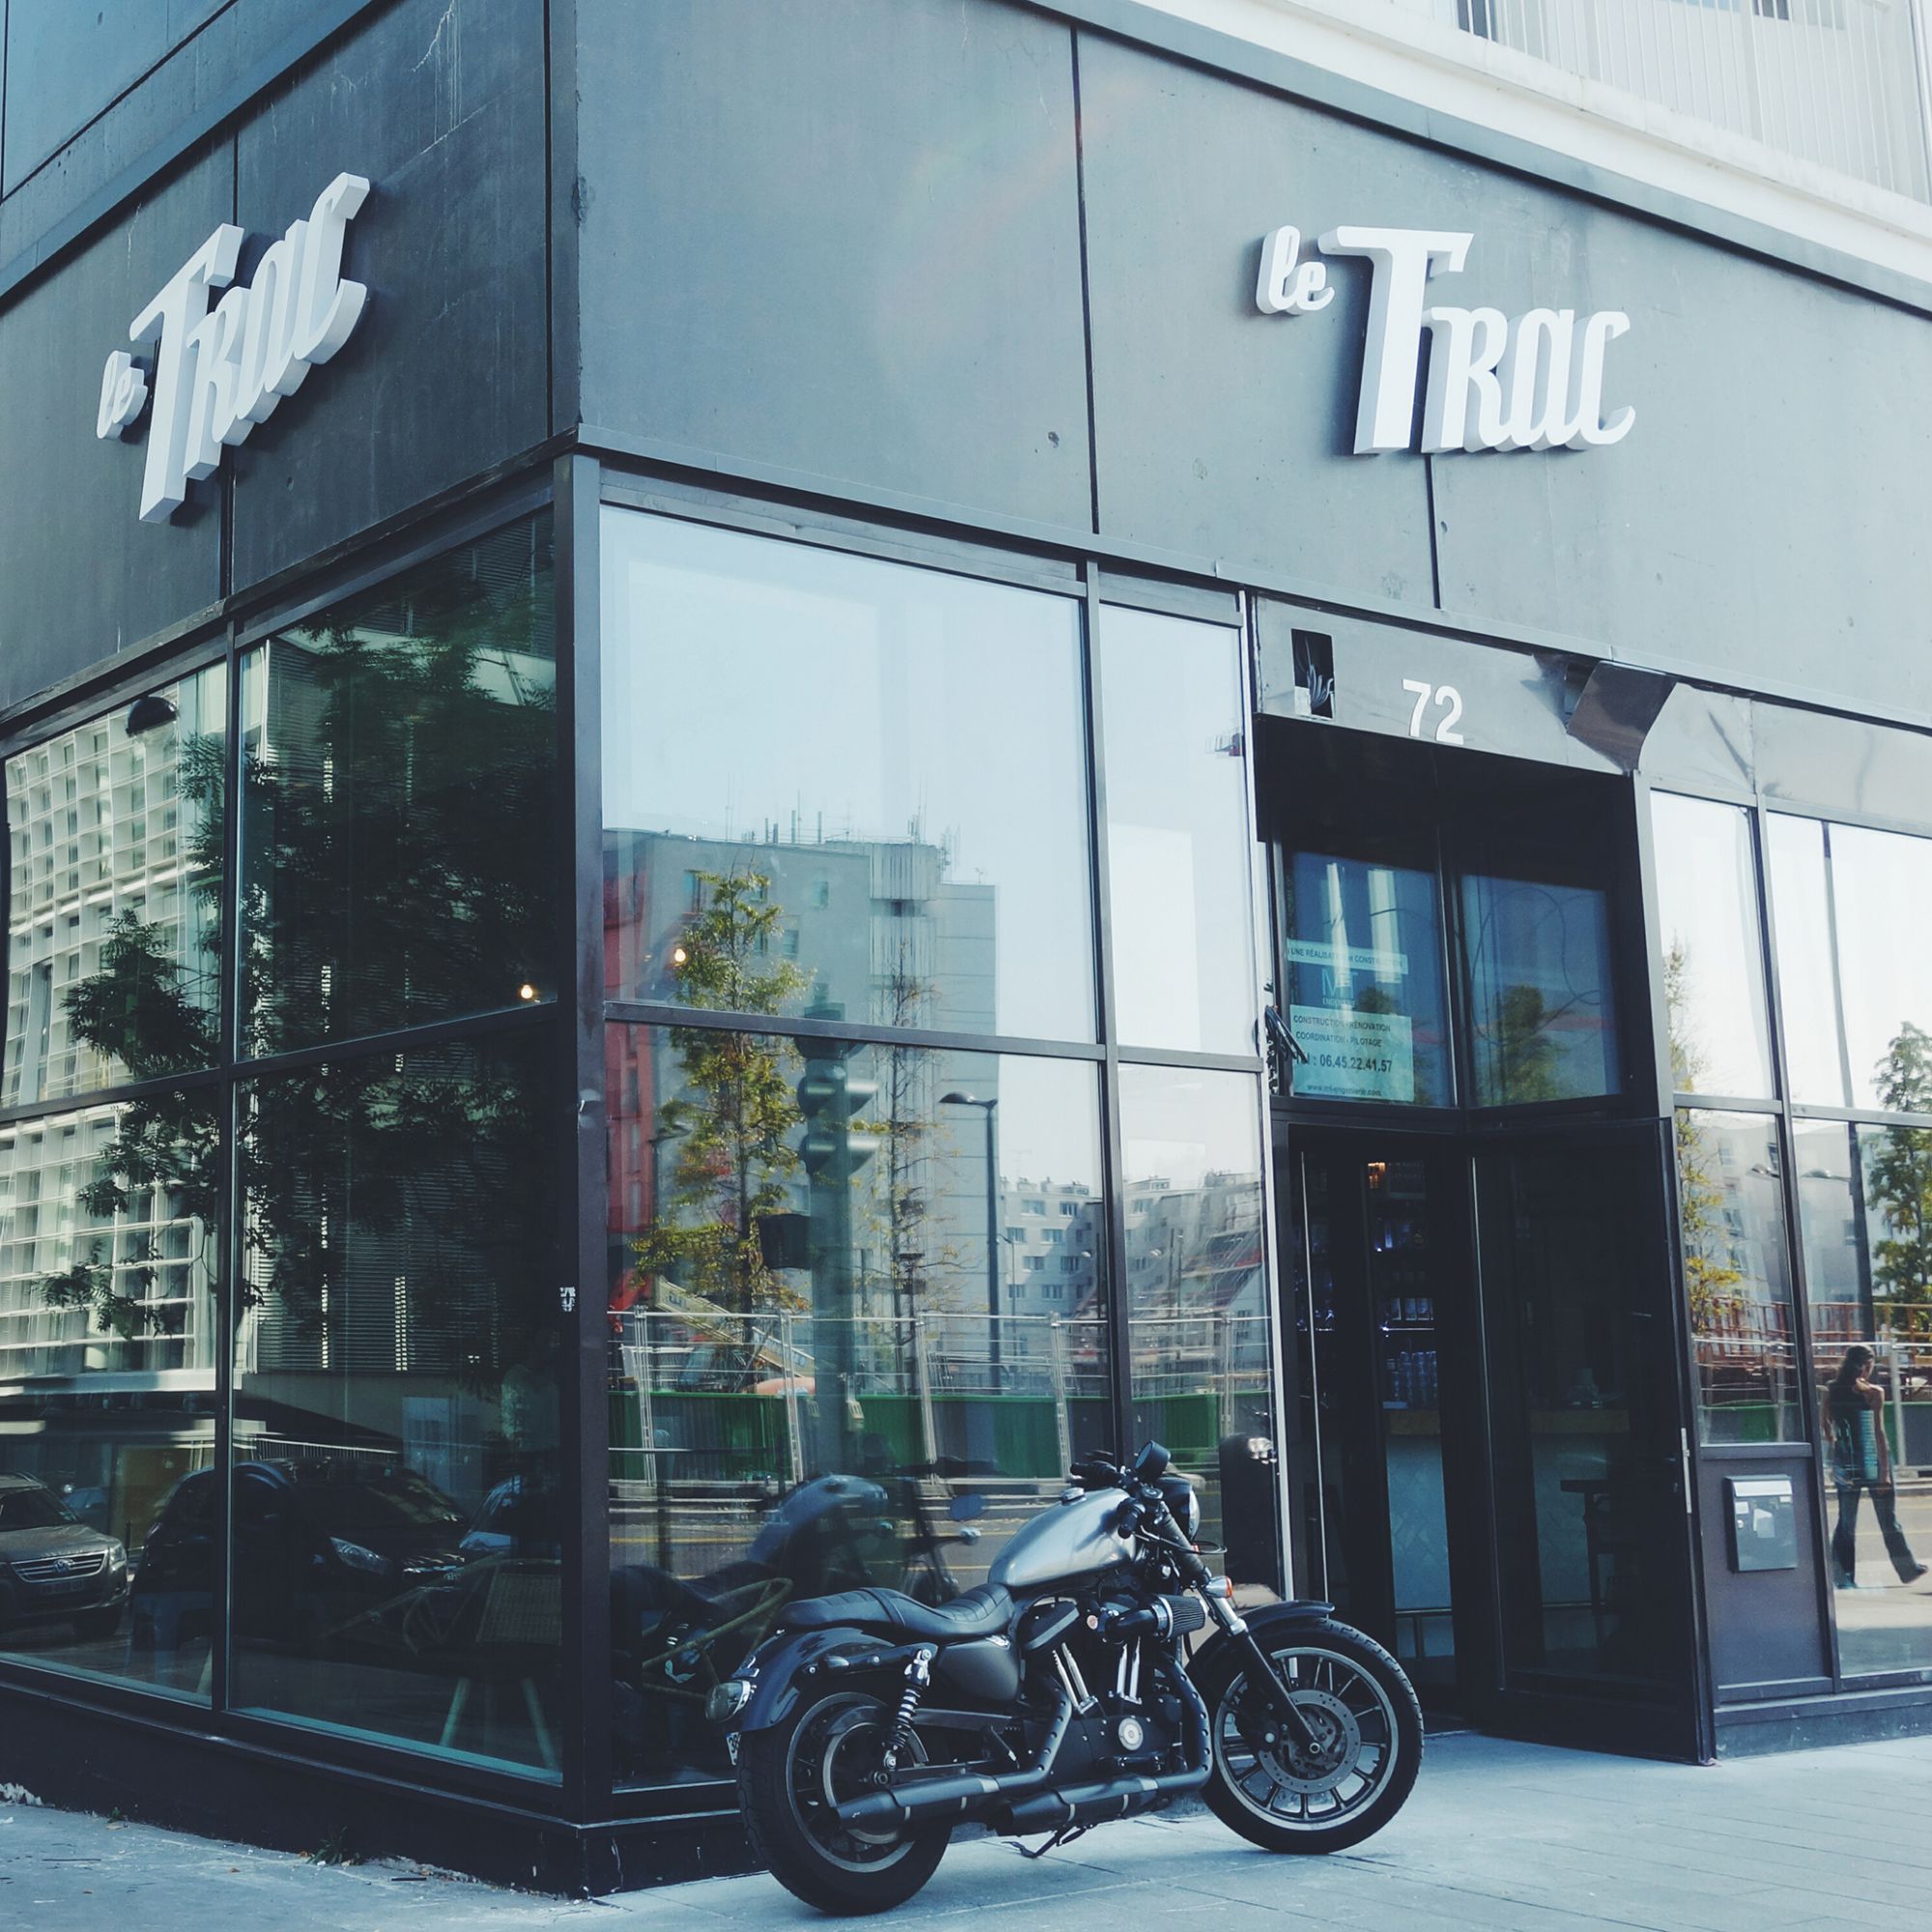 Le Trac Bar, 72 avenue de France, 75013 Paris